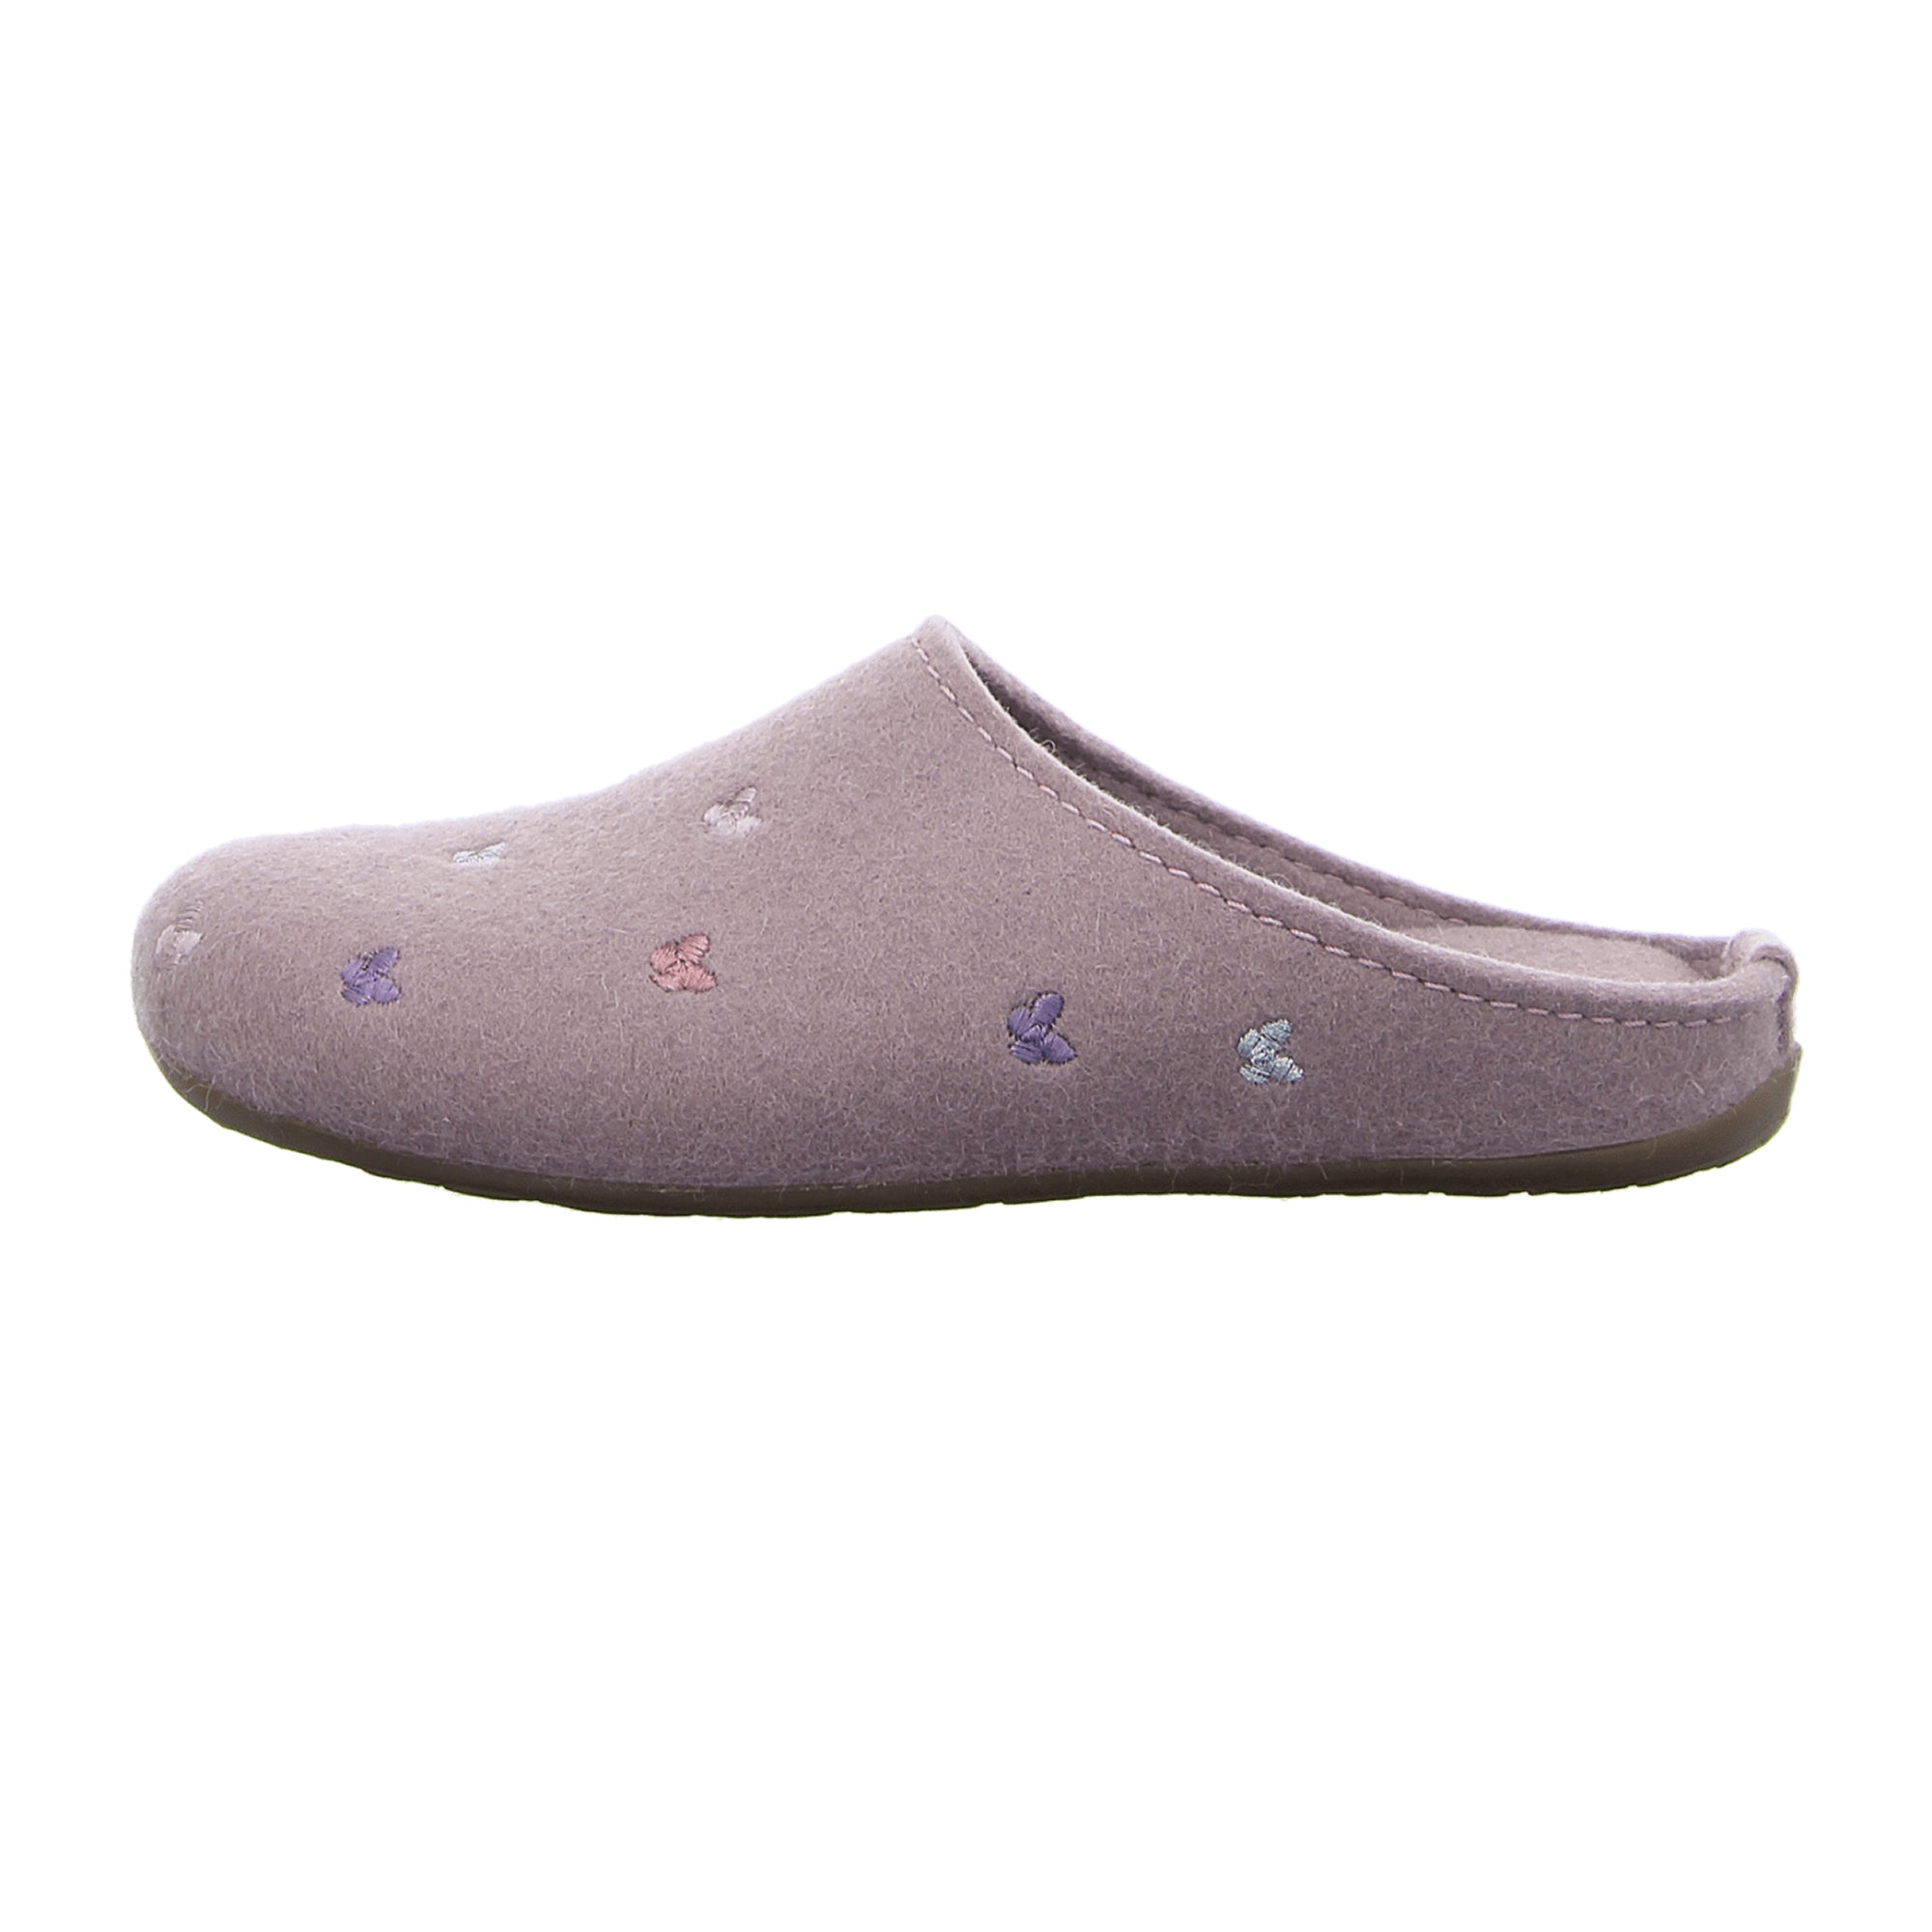 Haflinger Women's Slippers in Pink - Cozy & Stylish Footwear